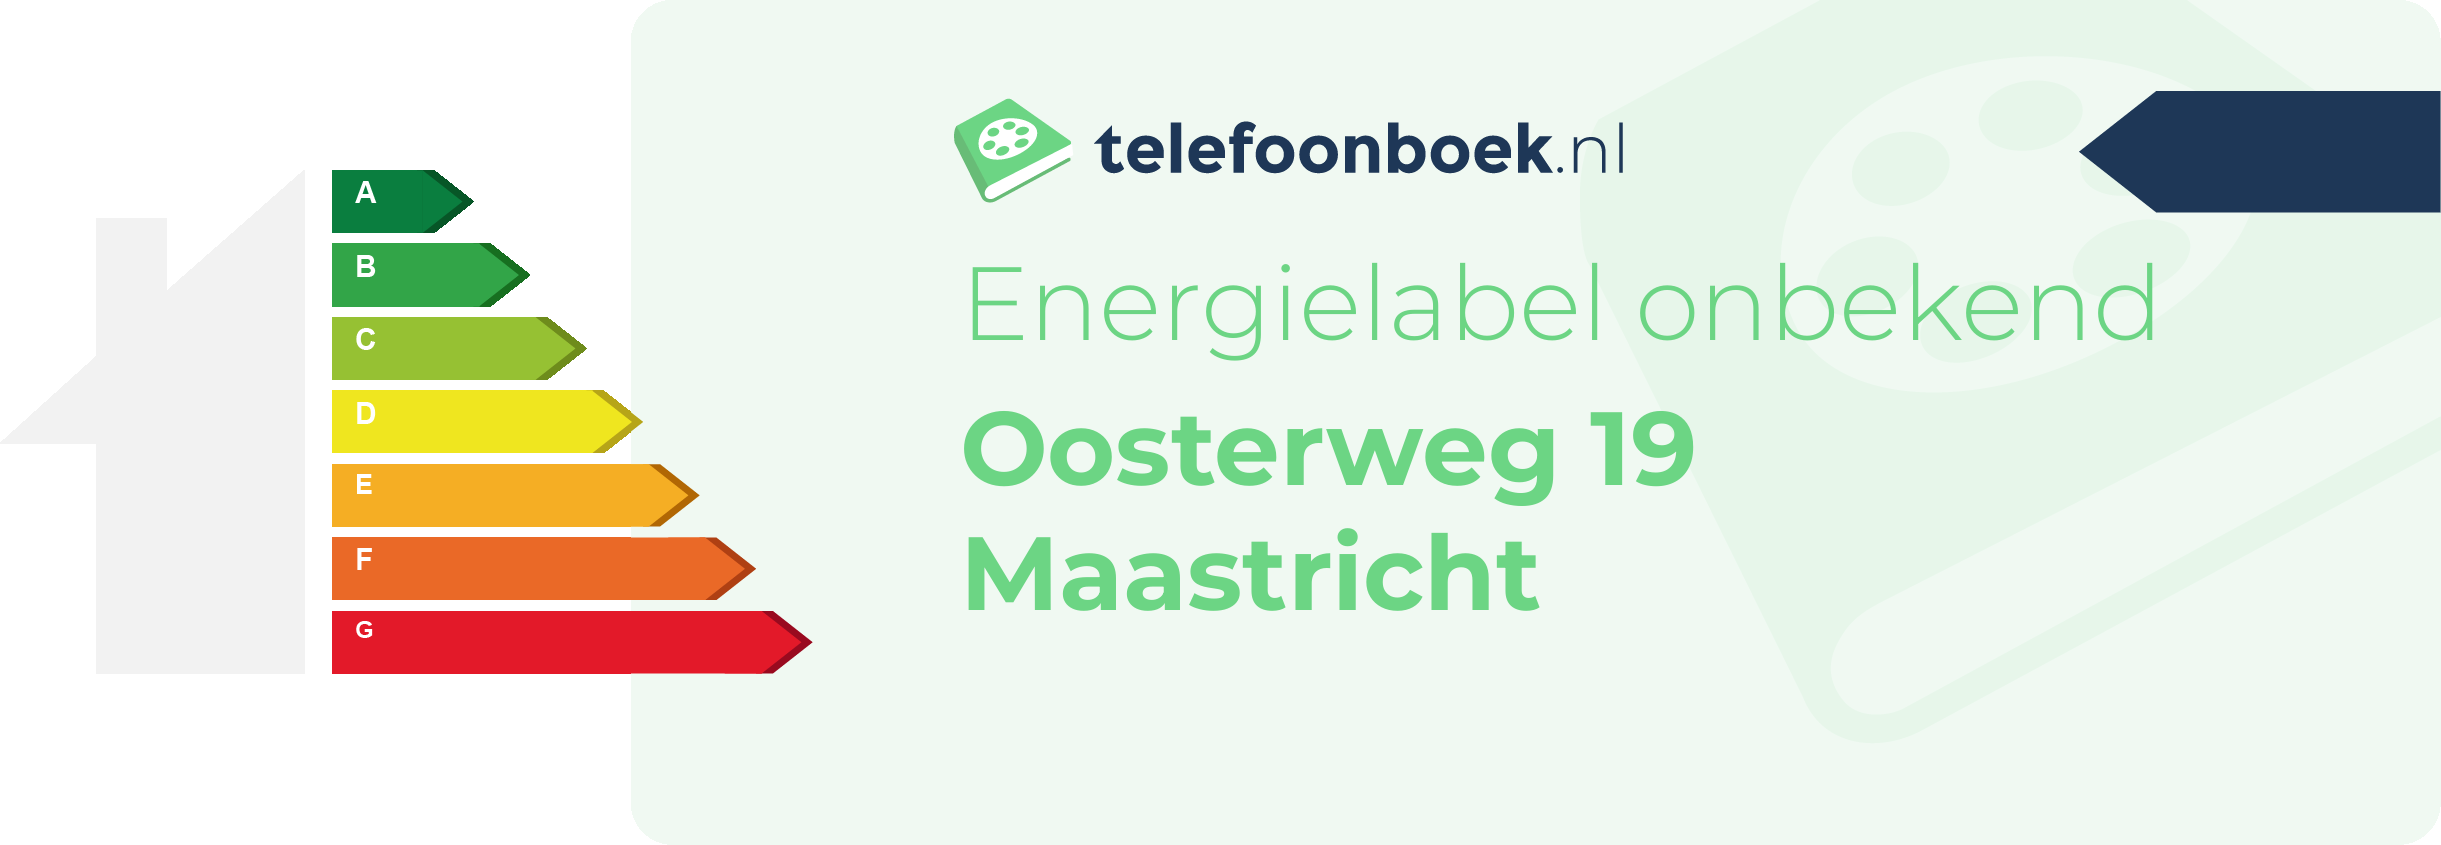 Energielabel Oosterweg 19 Maastricht